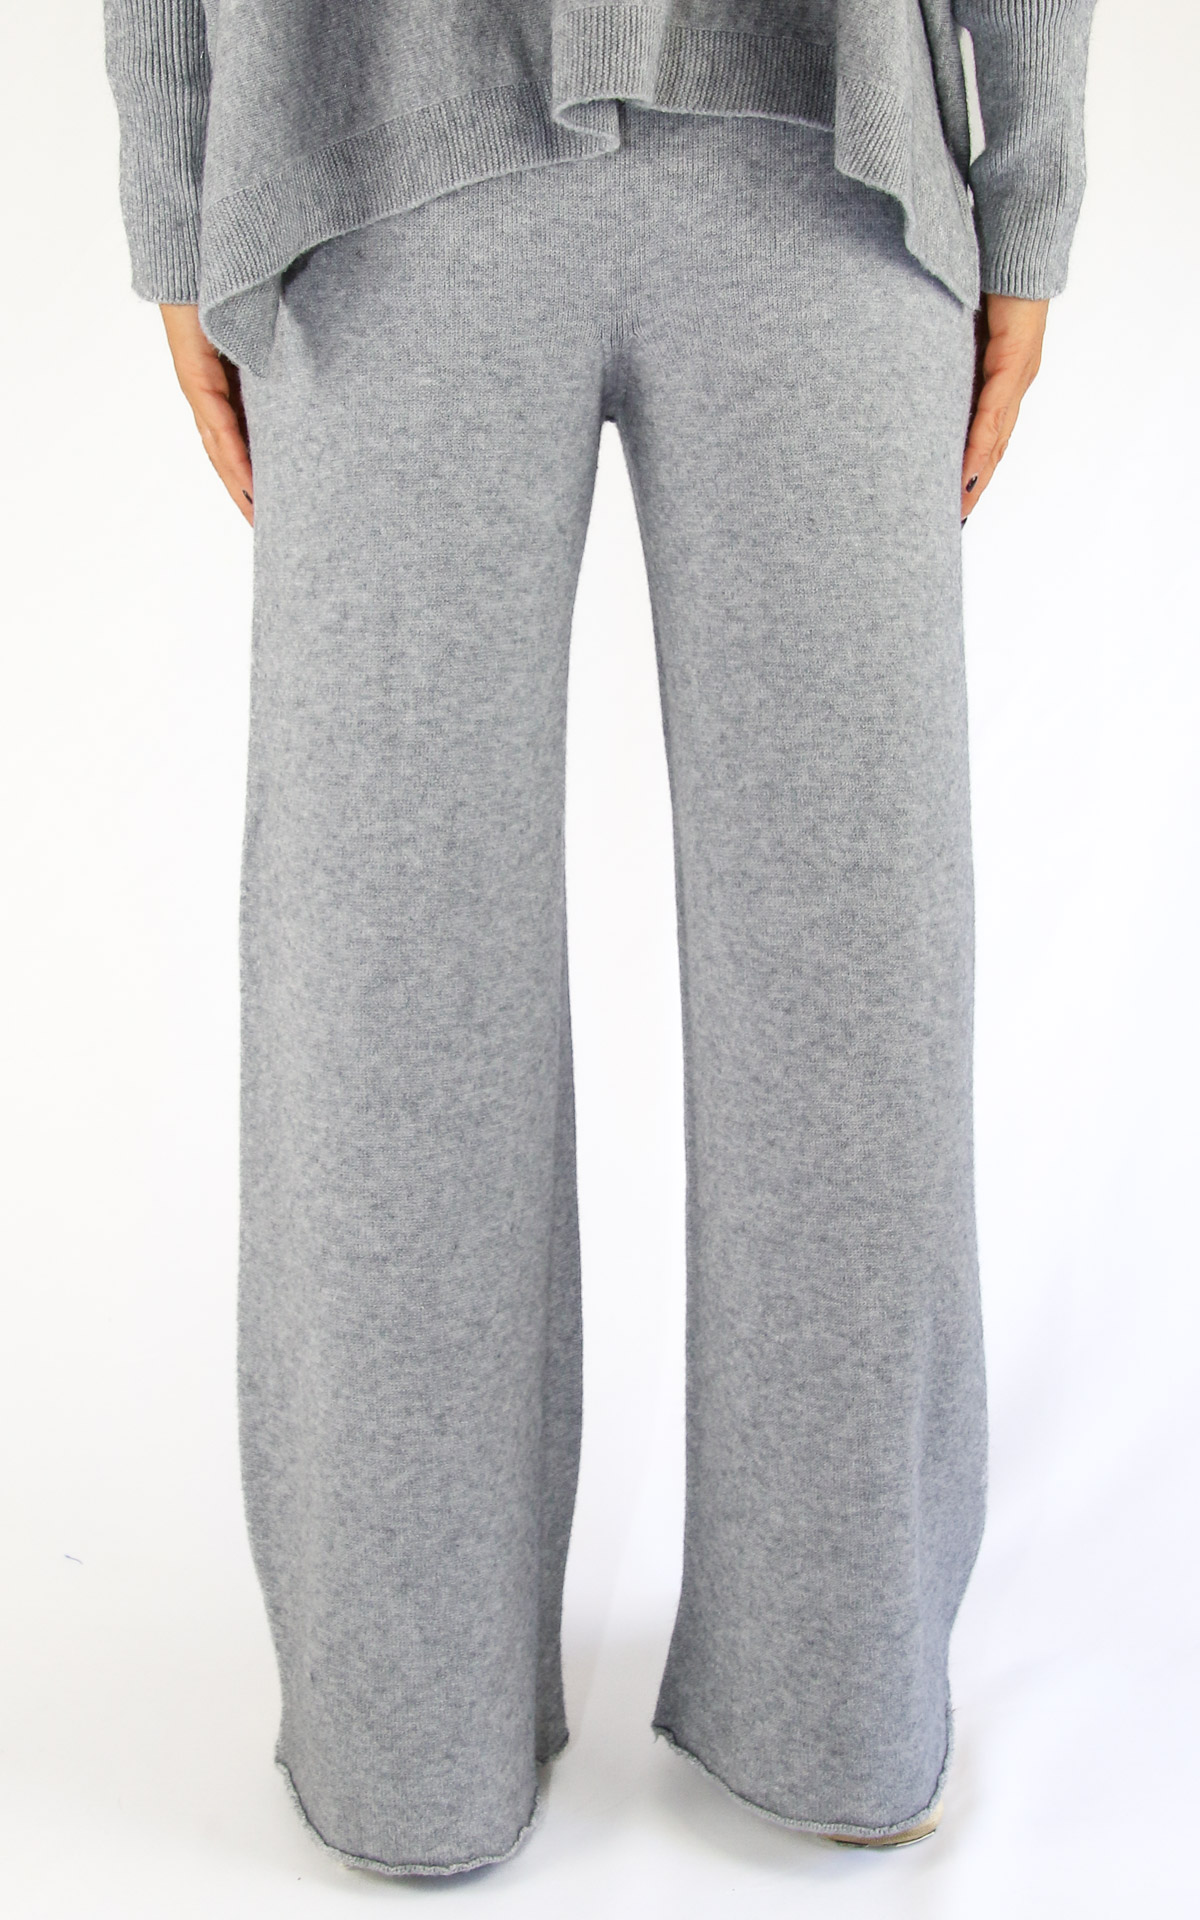 Off-On - pantalone in maglia - grigio